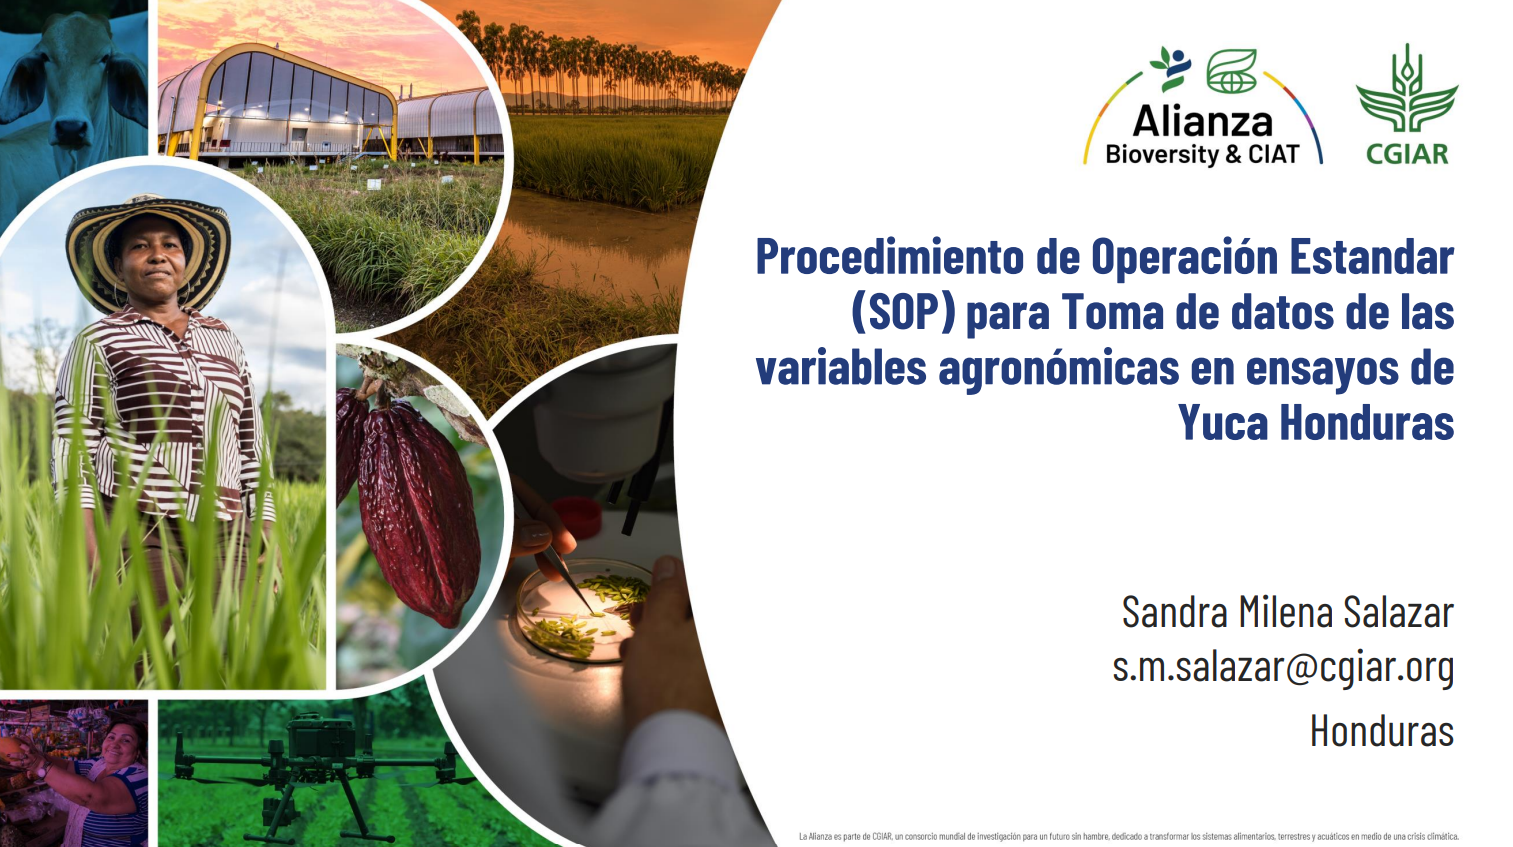 Procedimiento de Operación Estandar (SOP) para toma de datos de las variables agronómicas en ensayos de Yuca Honduras